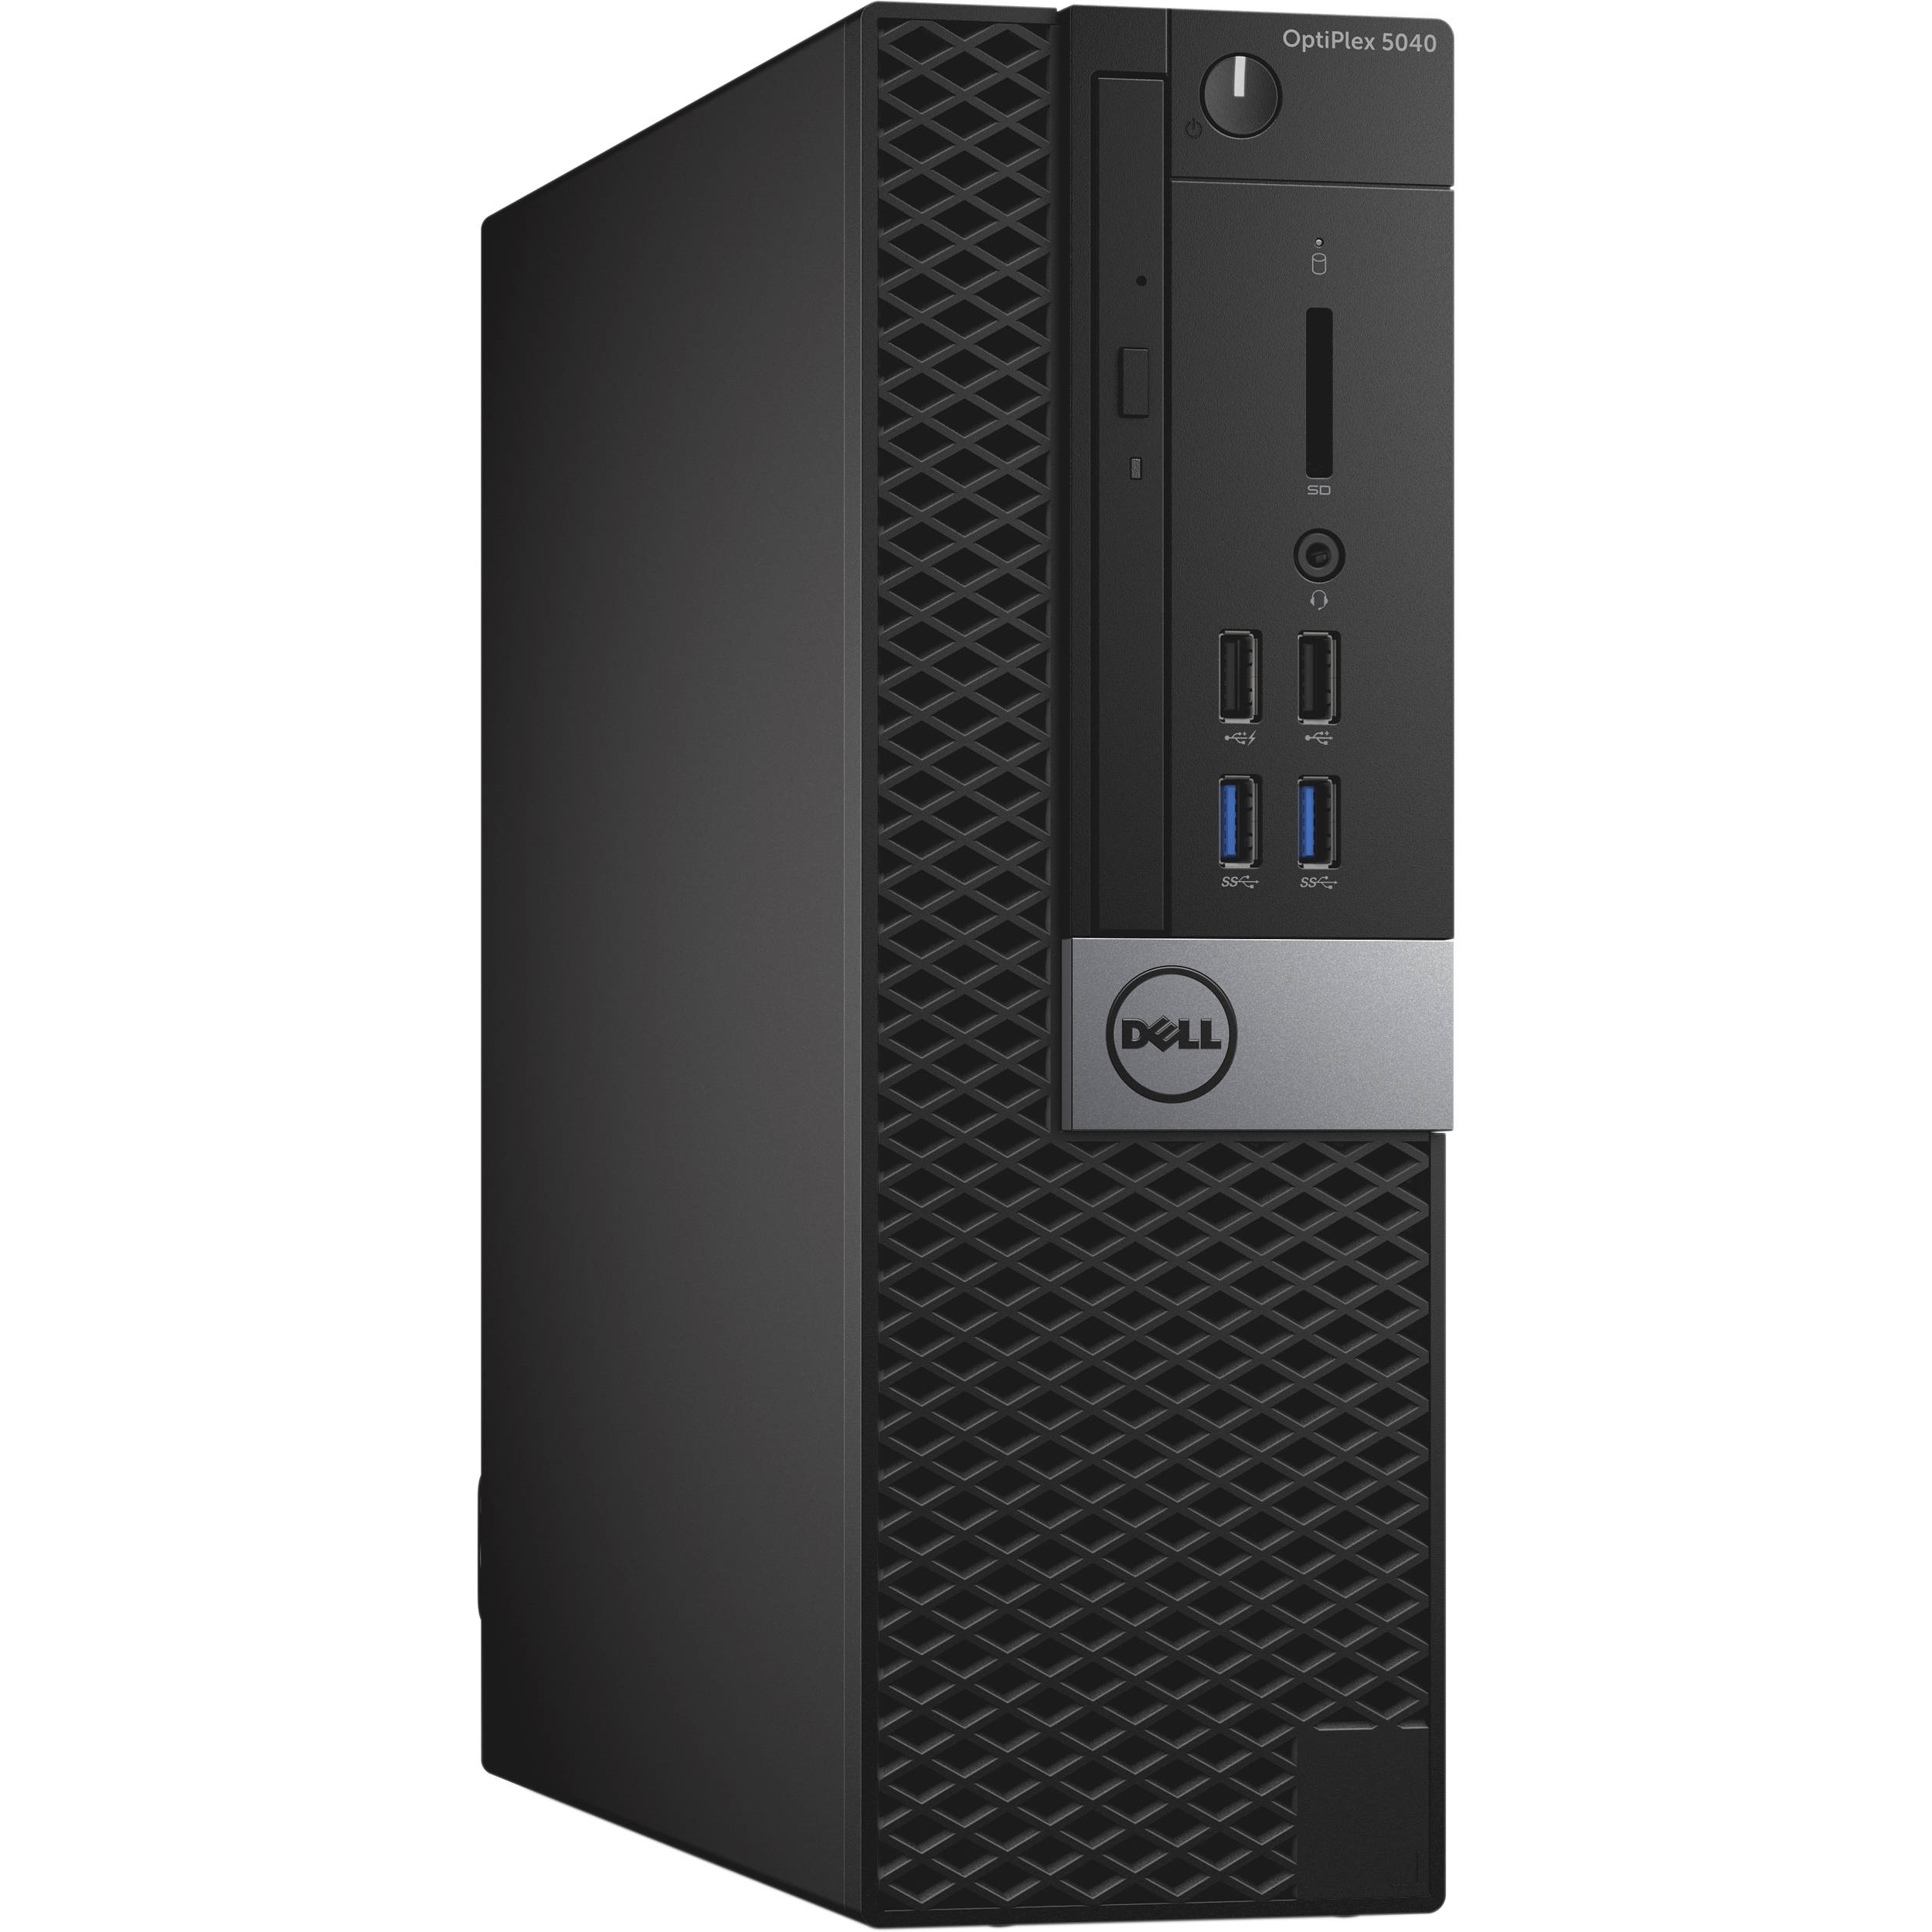 Dell Refurbished Dell Optiplex 5040 Intel Core i5-6500 X4 3.2GHz 8GB 256GB SSD Win10, Black (Certified Refurbished)